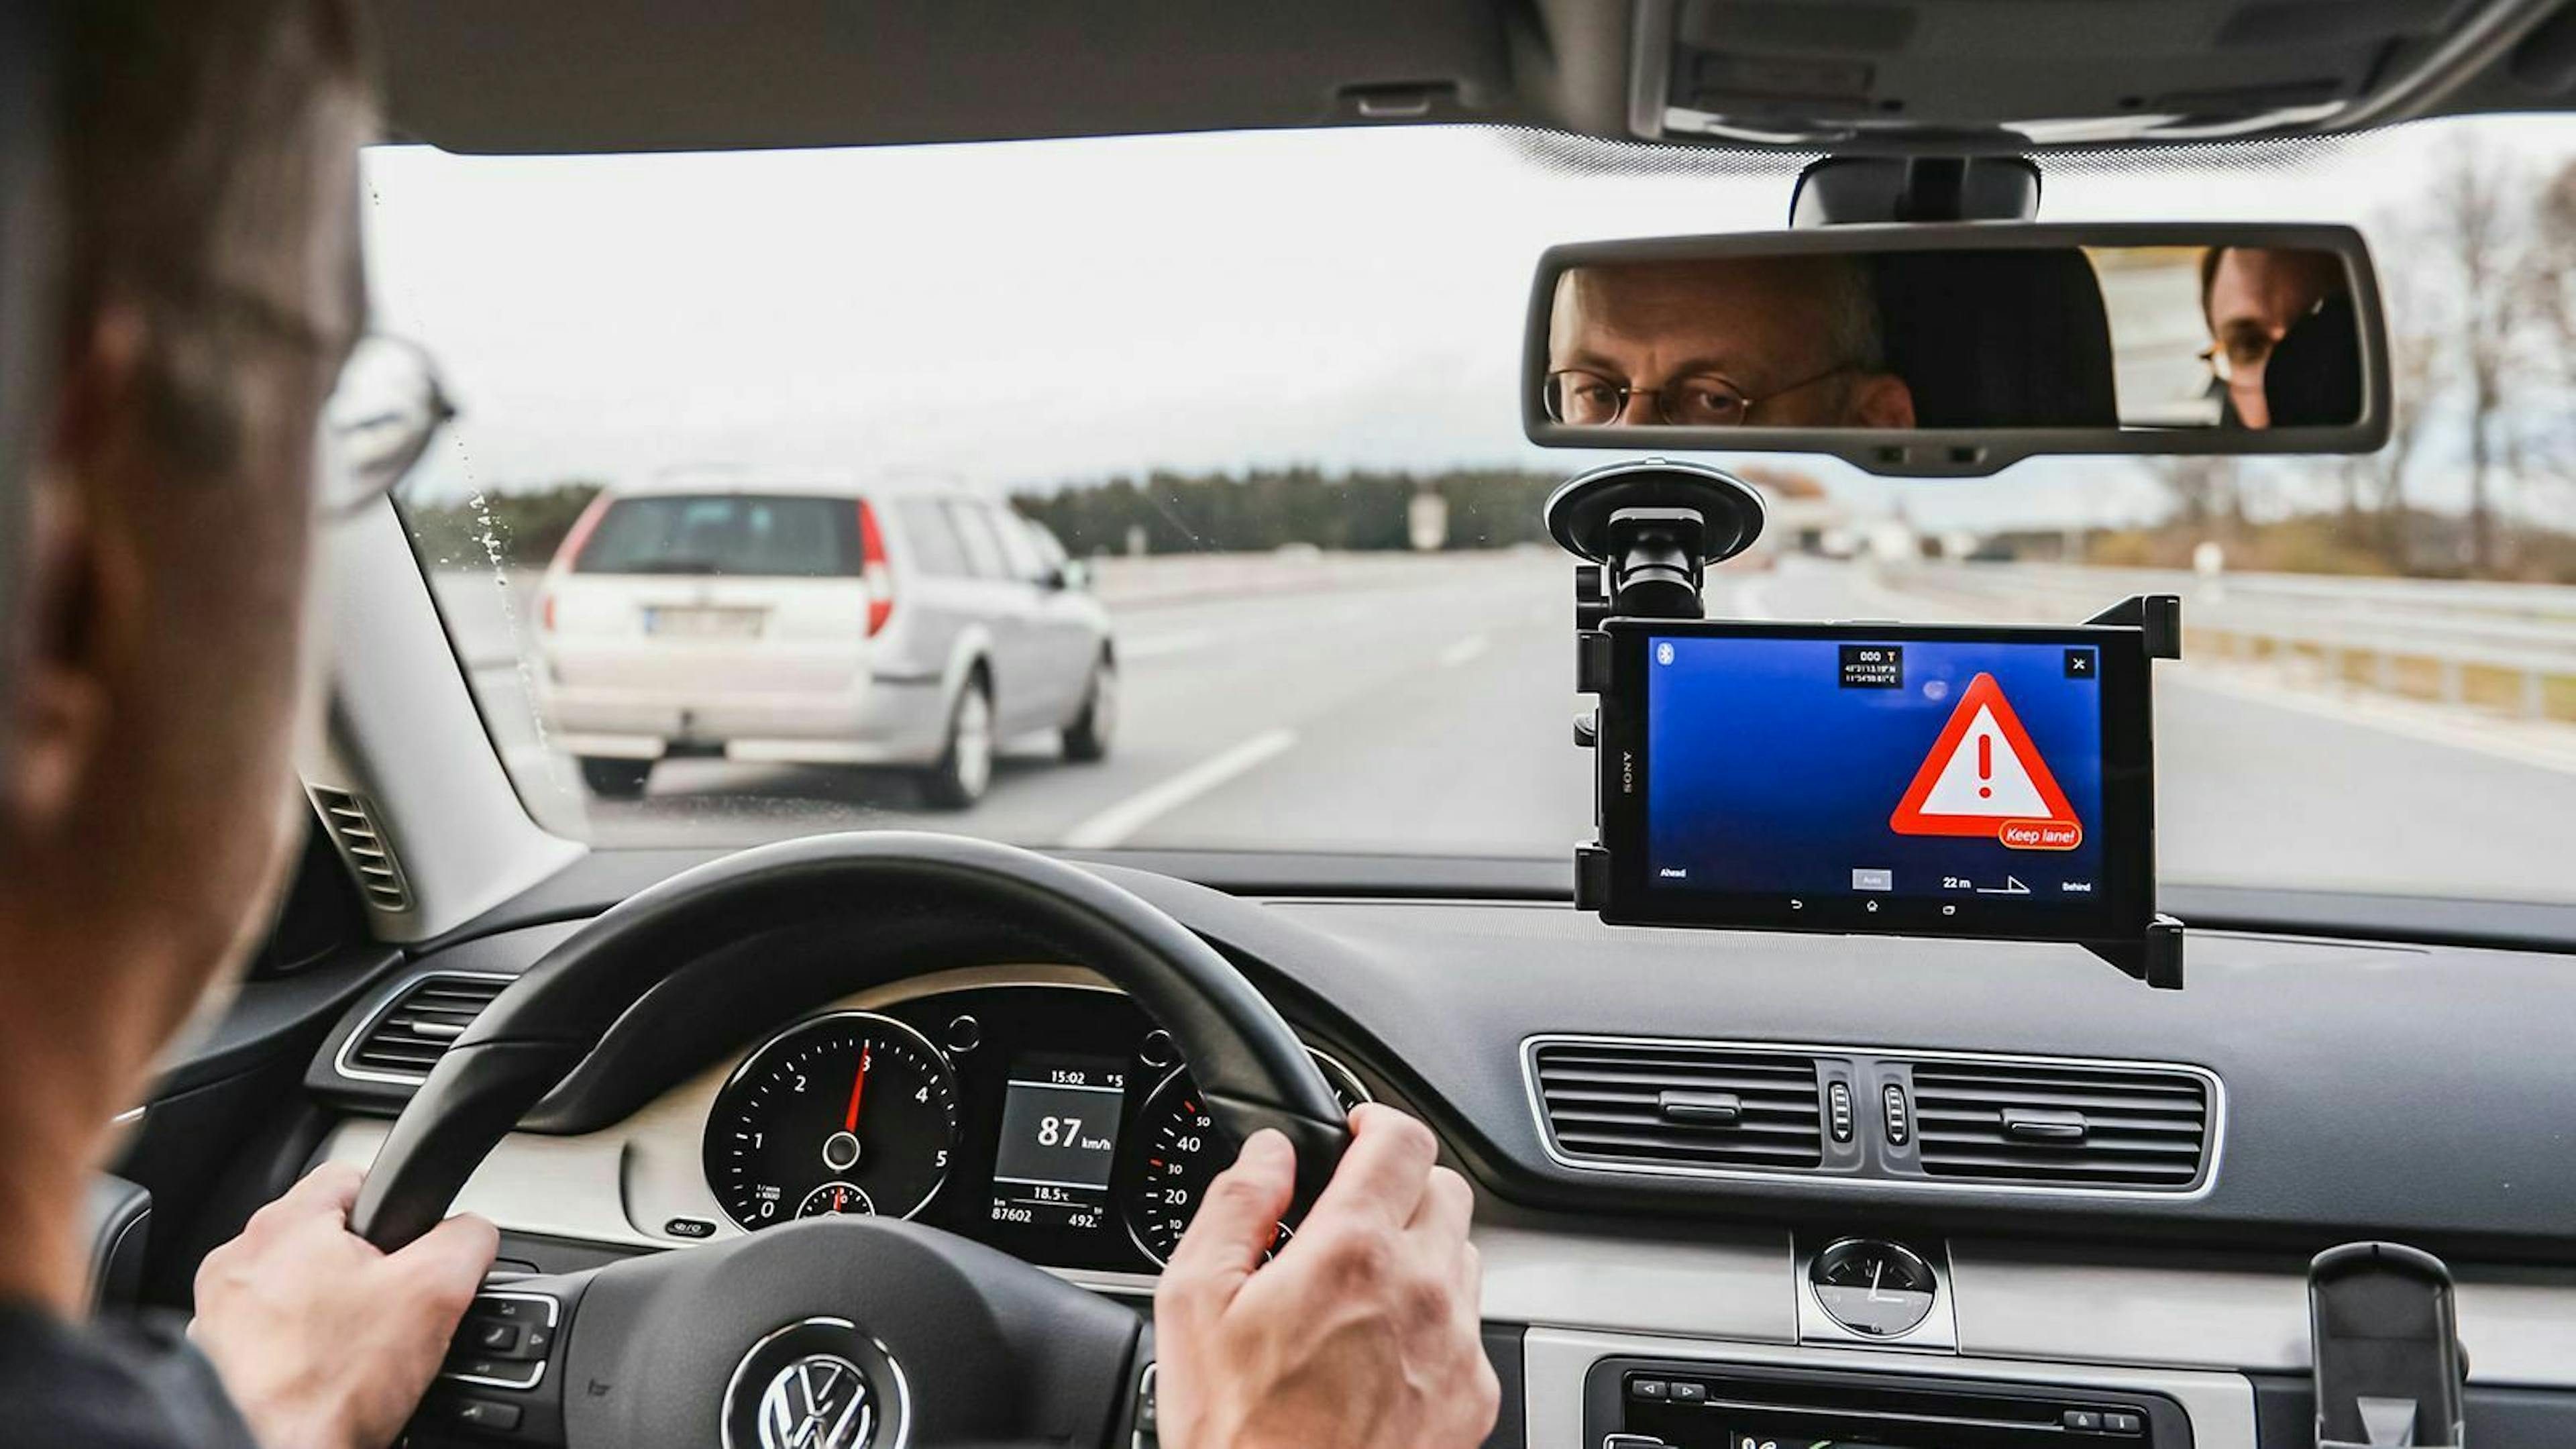 Digitales Testfeld Autobahn: So heißt ein Streckenabschnitt auf der A9, auf dem autonomes Fahren getestet werden kann.